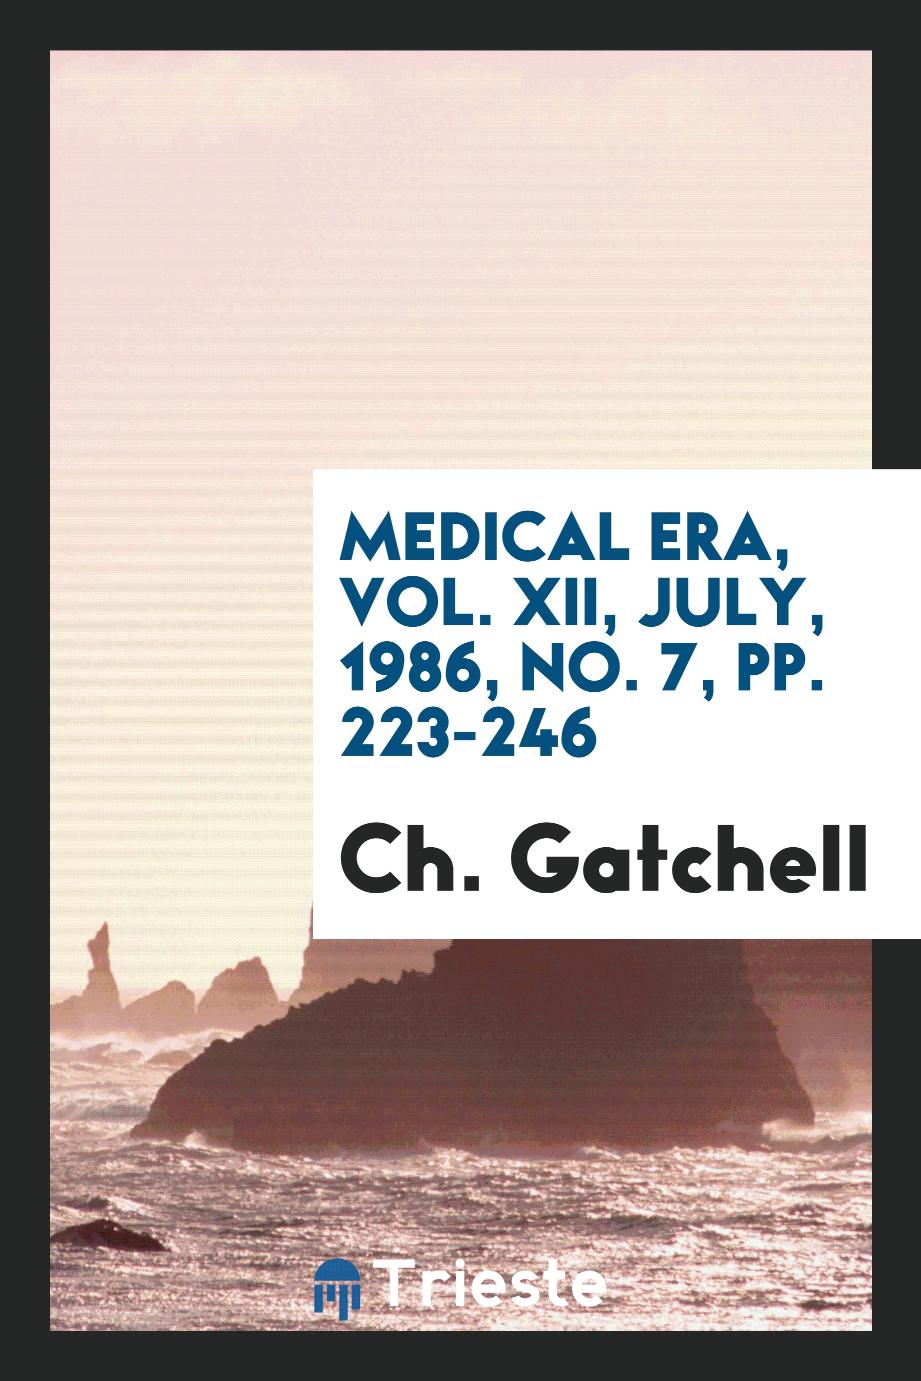 Medical era, Vol. XII, July, 1986, No. 7, pp. 223-246